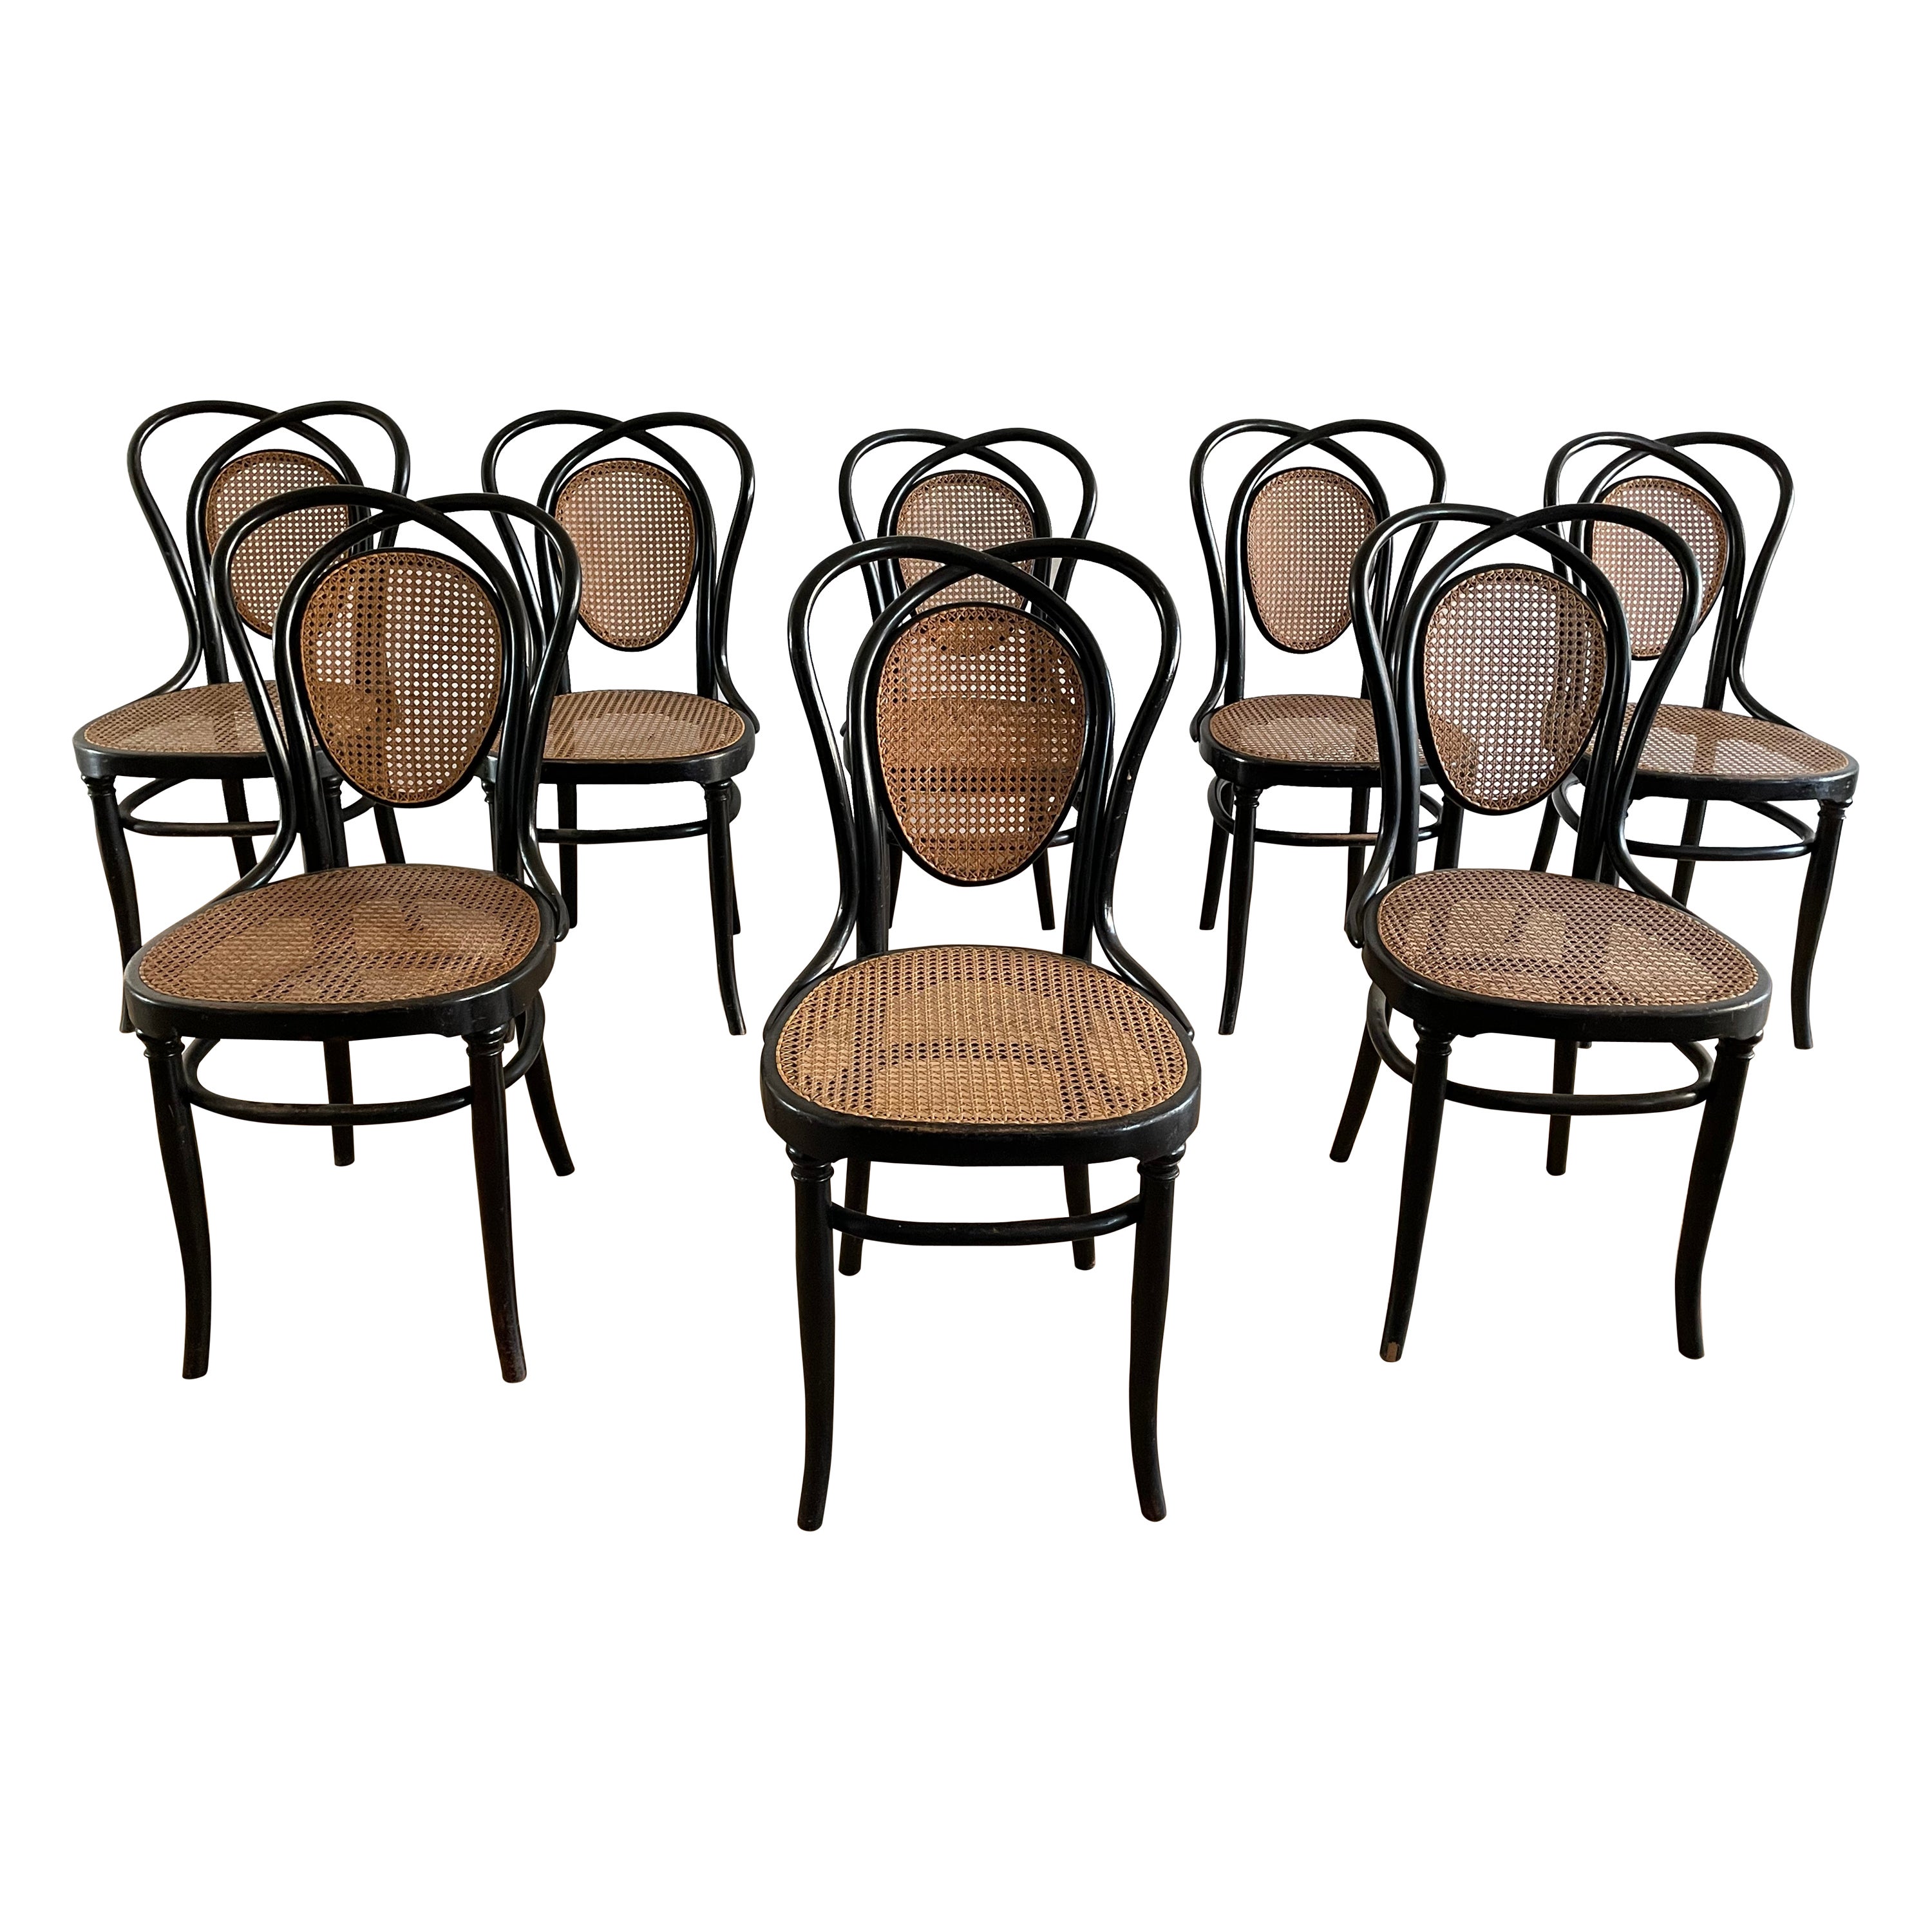 8 Wiener Stühle N.33 von J & J Kohn, 1900er Jahre